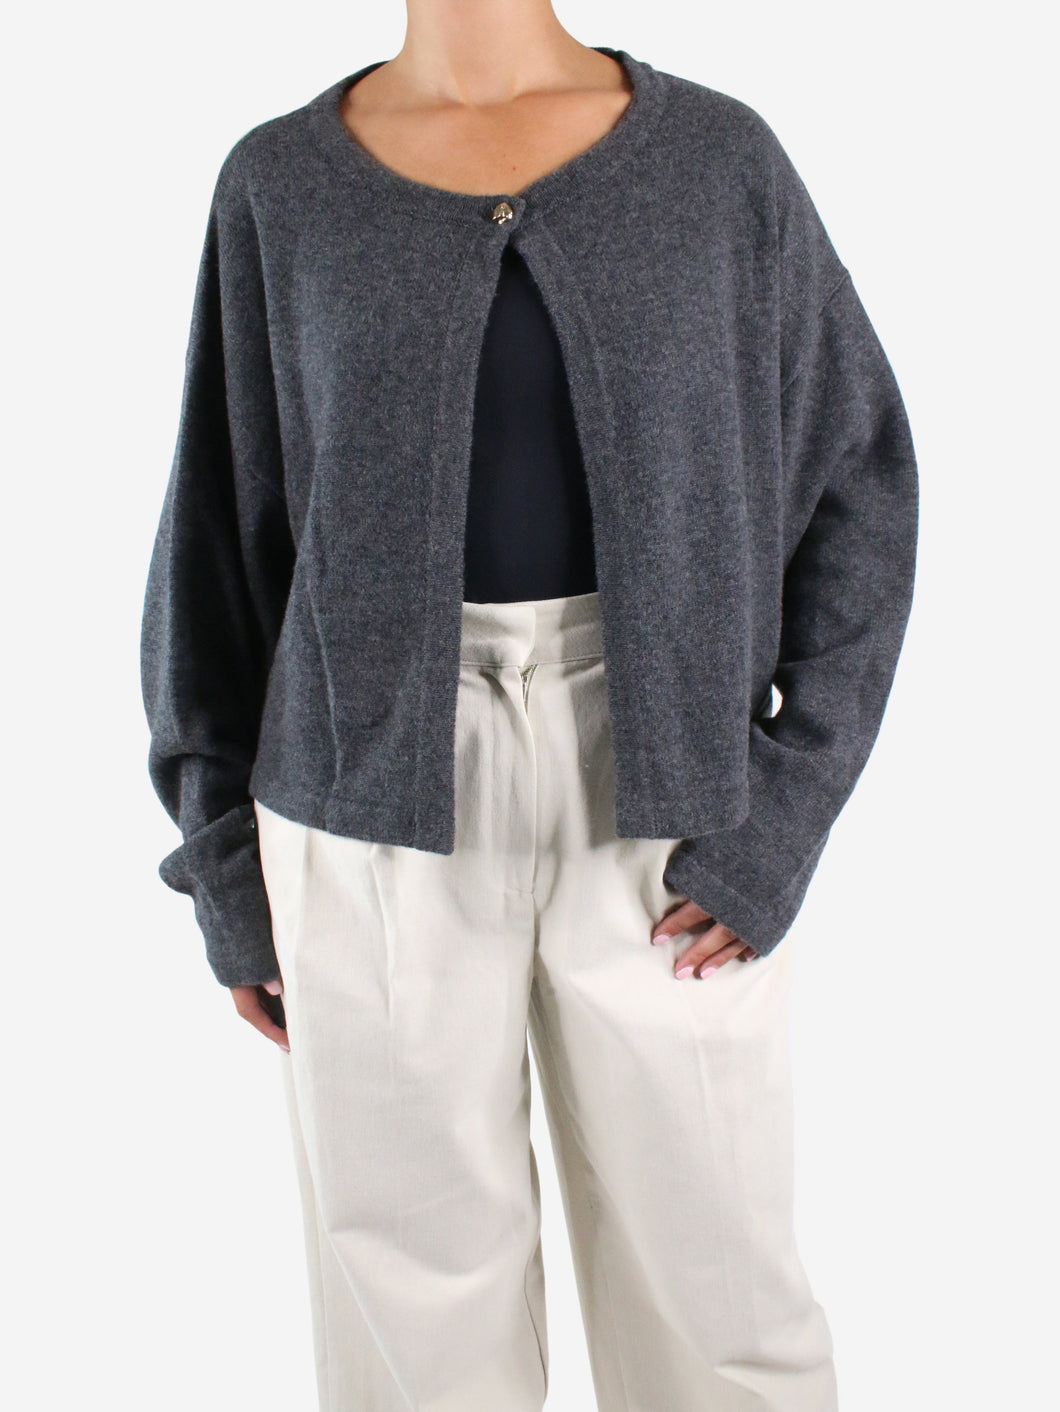 Grey open cardigan - size S Knitwear by Aylin Koenig 